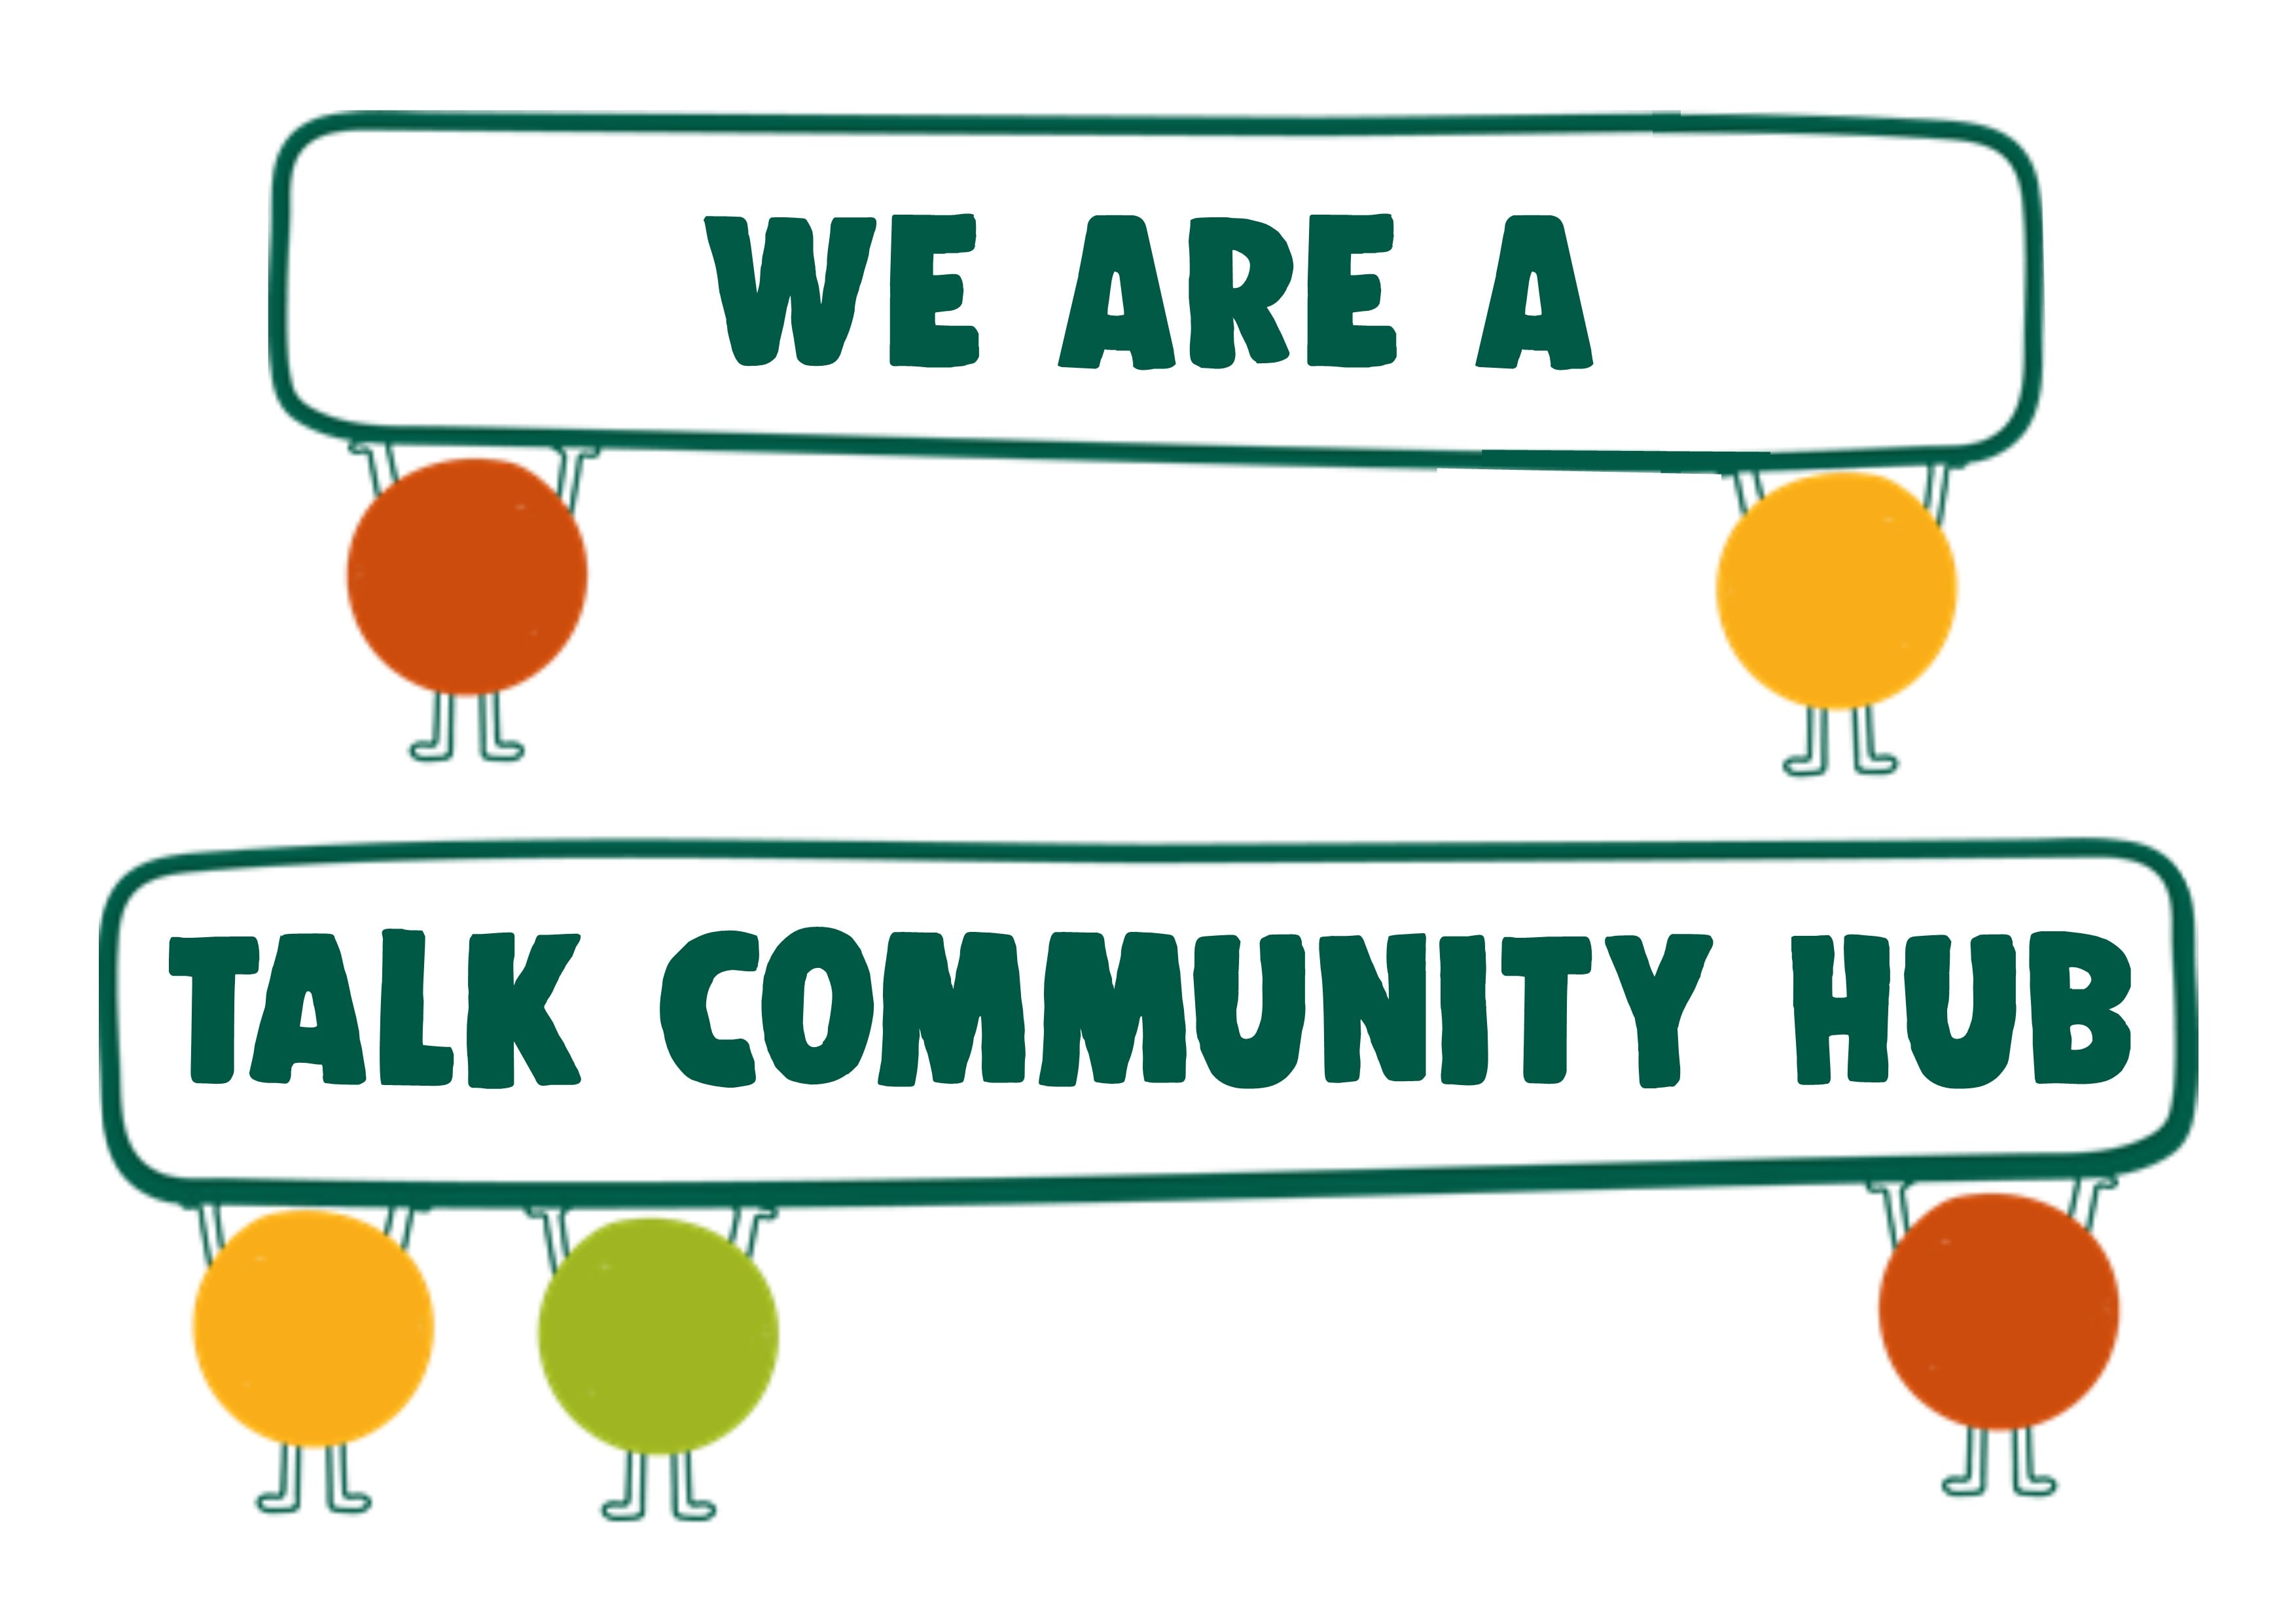 Talk community hub member